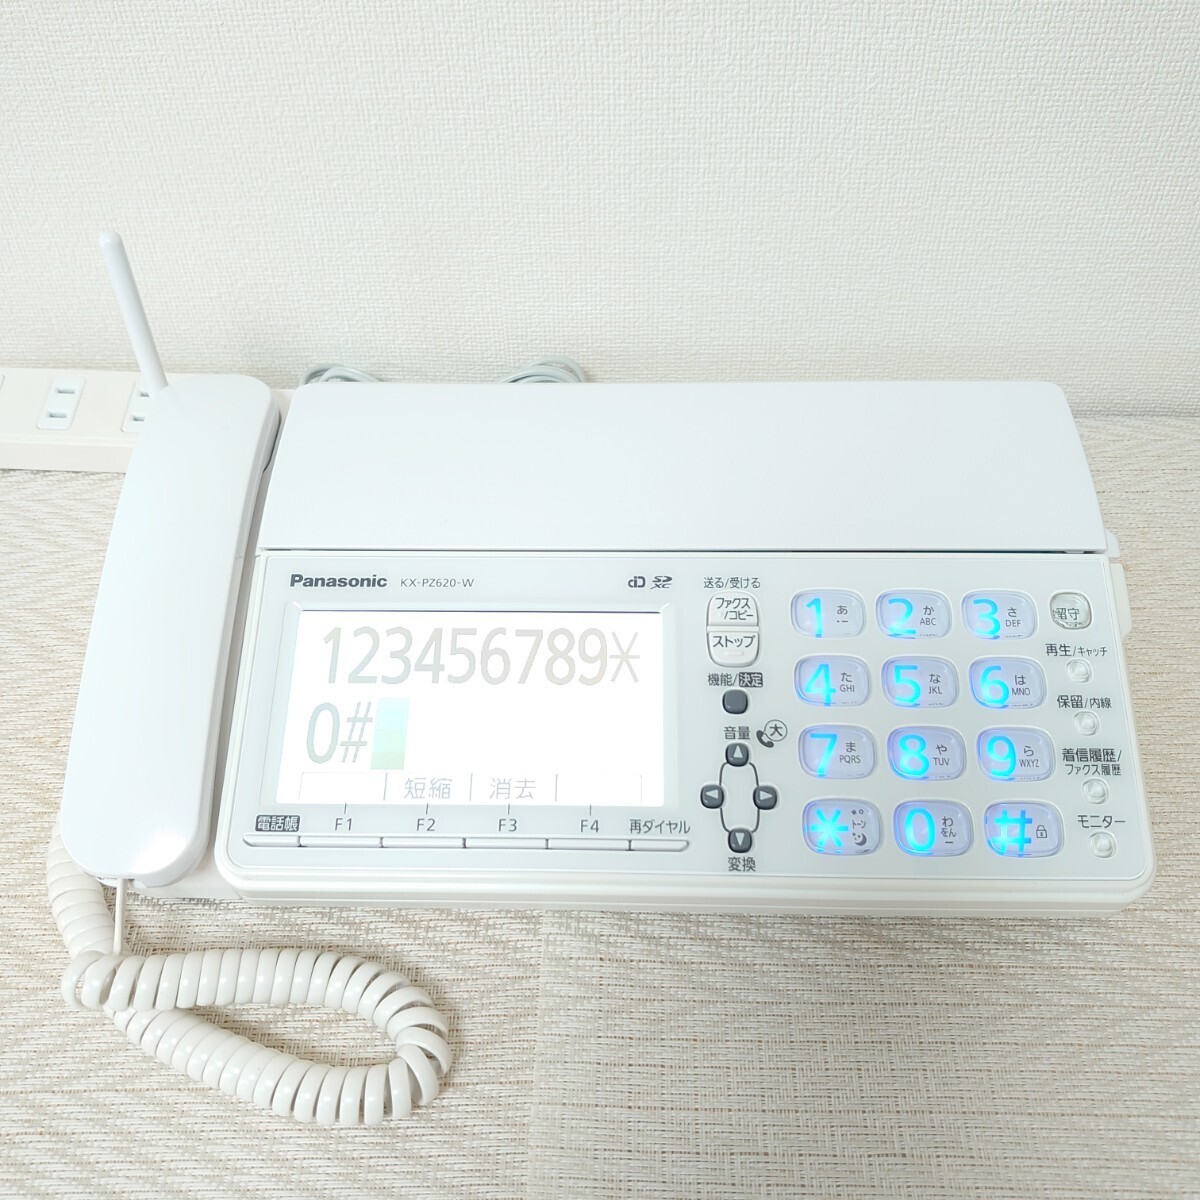 [ смотри из печать ]Panasonic Panasonic FAX KX-PZ620( белый ) инструкция по эксплуатации * новый товар красящая лента оборудование . settled * телефон линия кабель родители машина только 